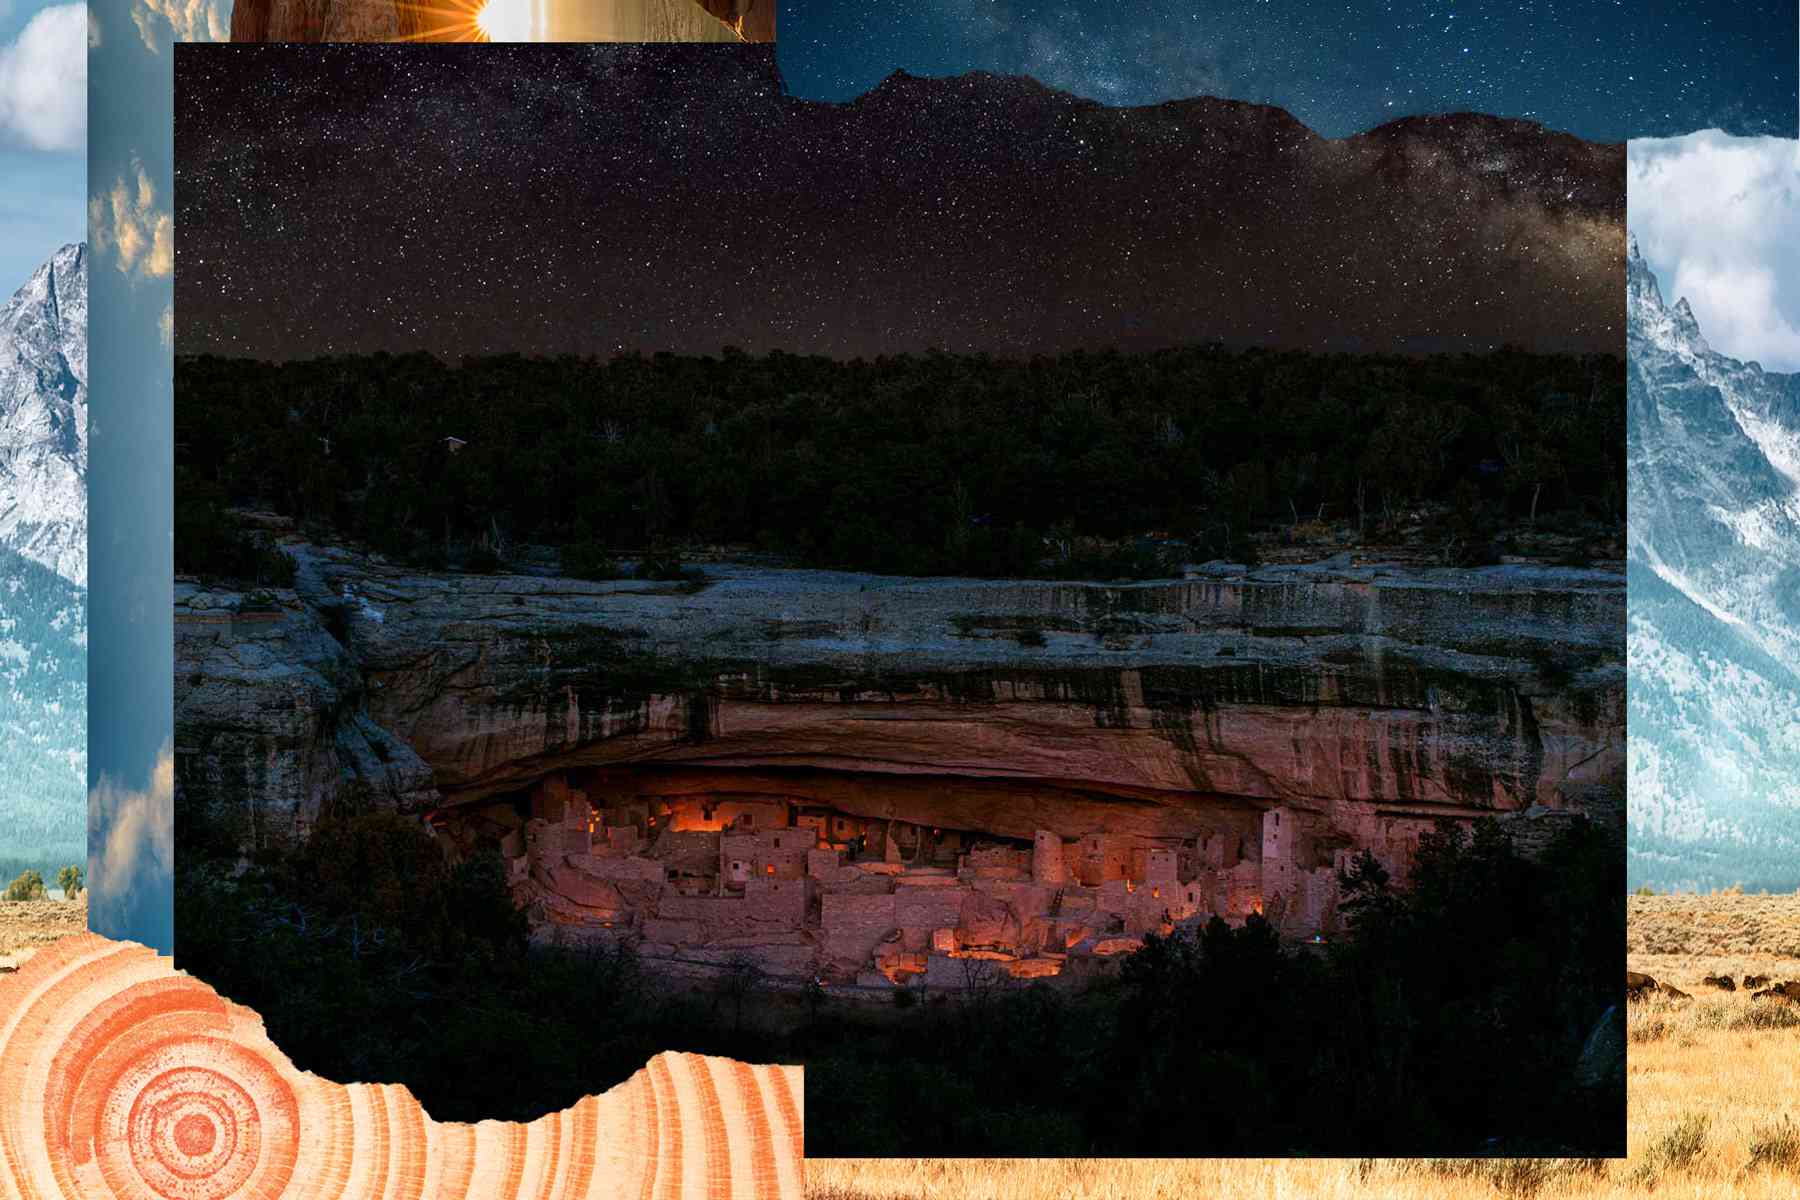 Mesa Verde Cliff Dwellings éclairé par la lumière de la lanterne avec la Voie lactée au-dessus.